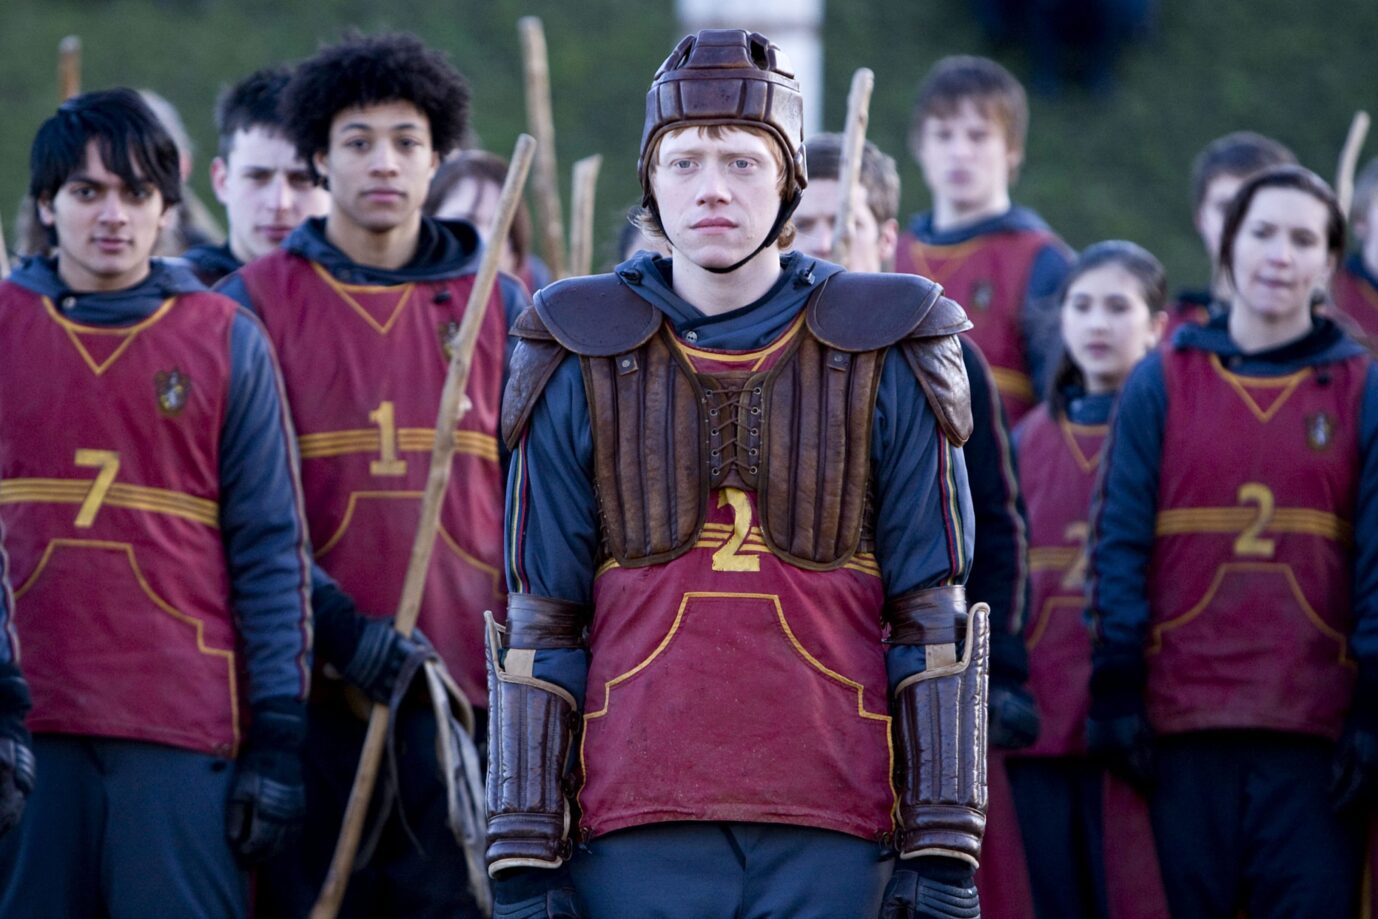 Szene aus dem Film Harry Potter: Gryffindors Quidditch-Mannschaft macht sich bereit für ein Spiel